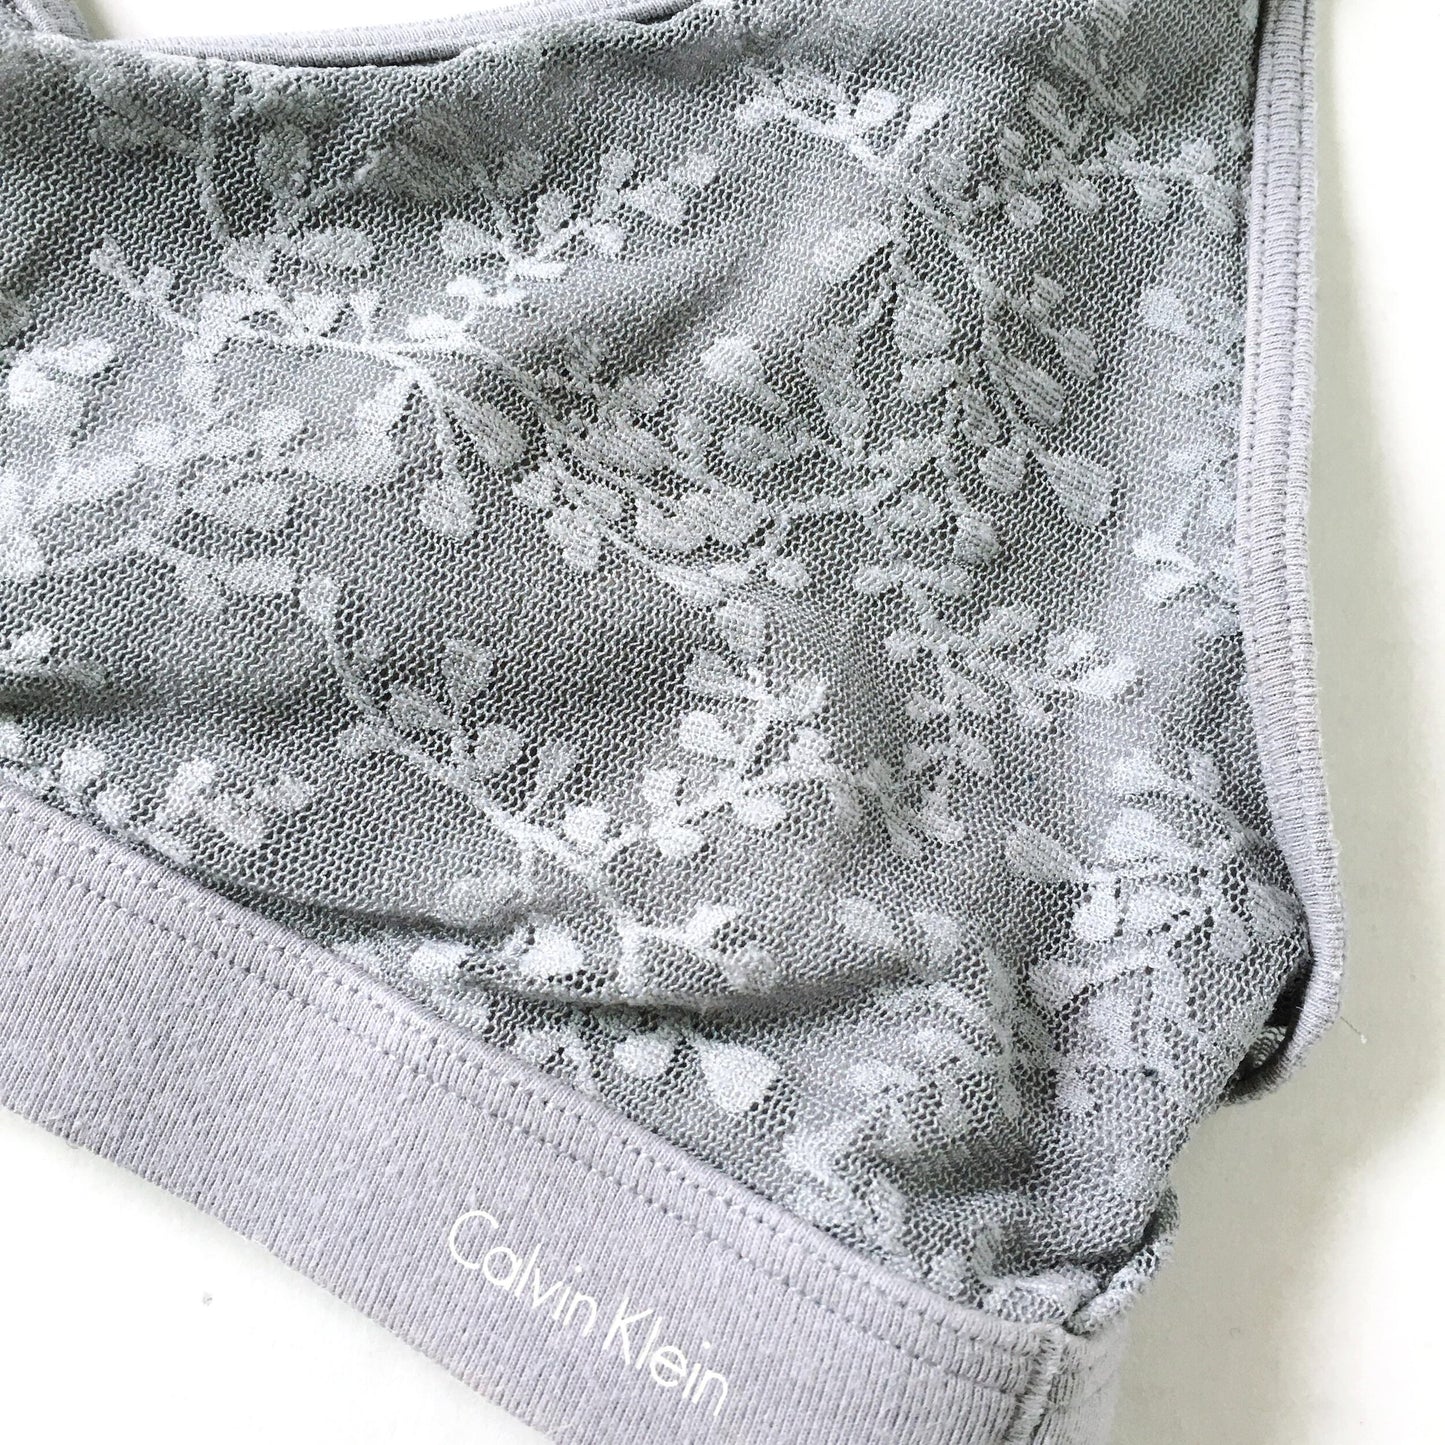 Calvin Klein lace bralette - size Medium